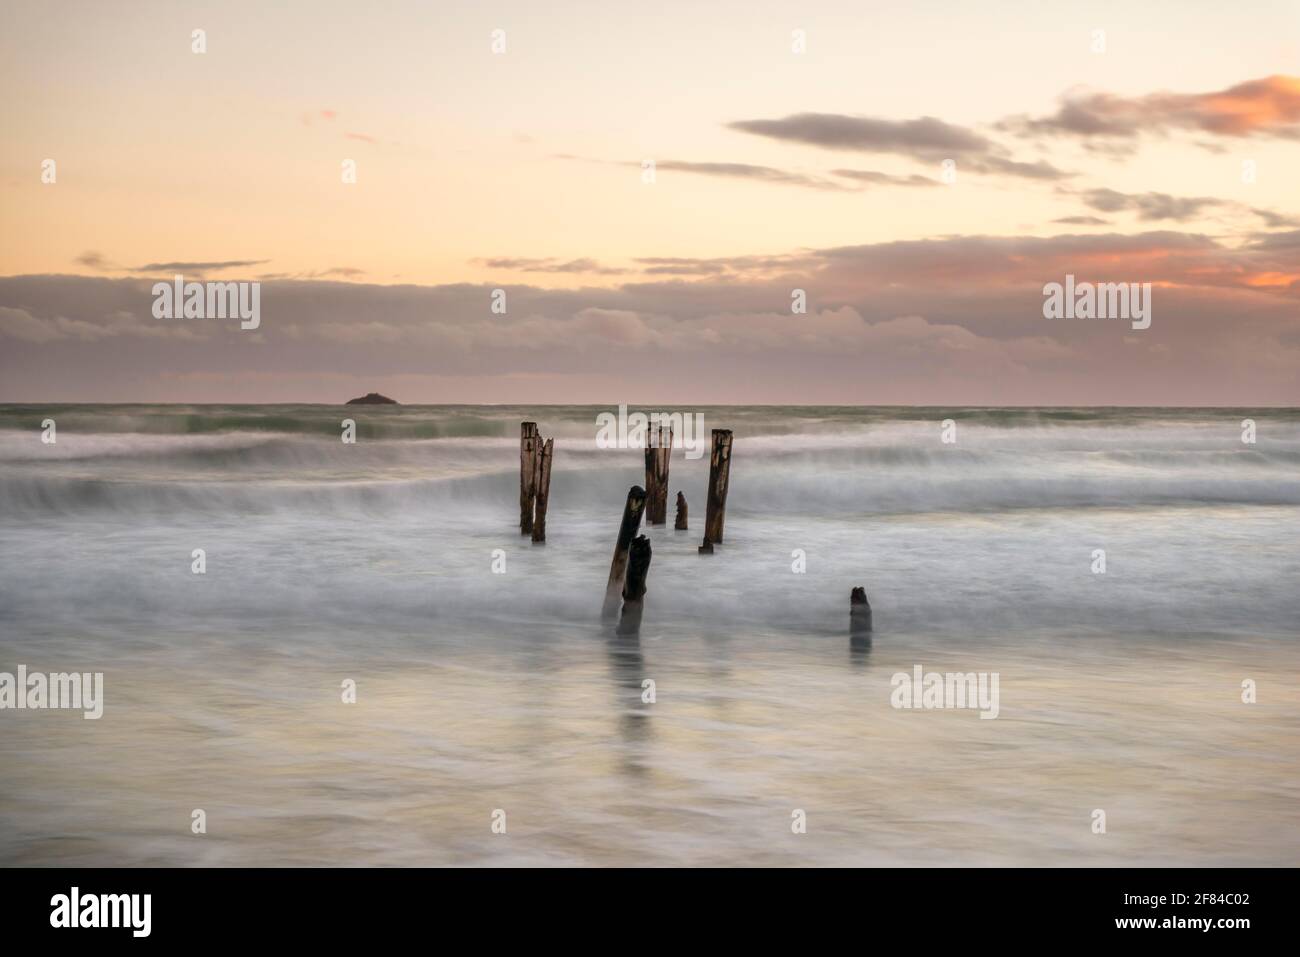 Alte kaputte Anlegestelle, Post im Wasser am Strand, Abendstimmung, St. Clair, Dunedin, Südinsel, Neuseeland Stockfoto